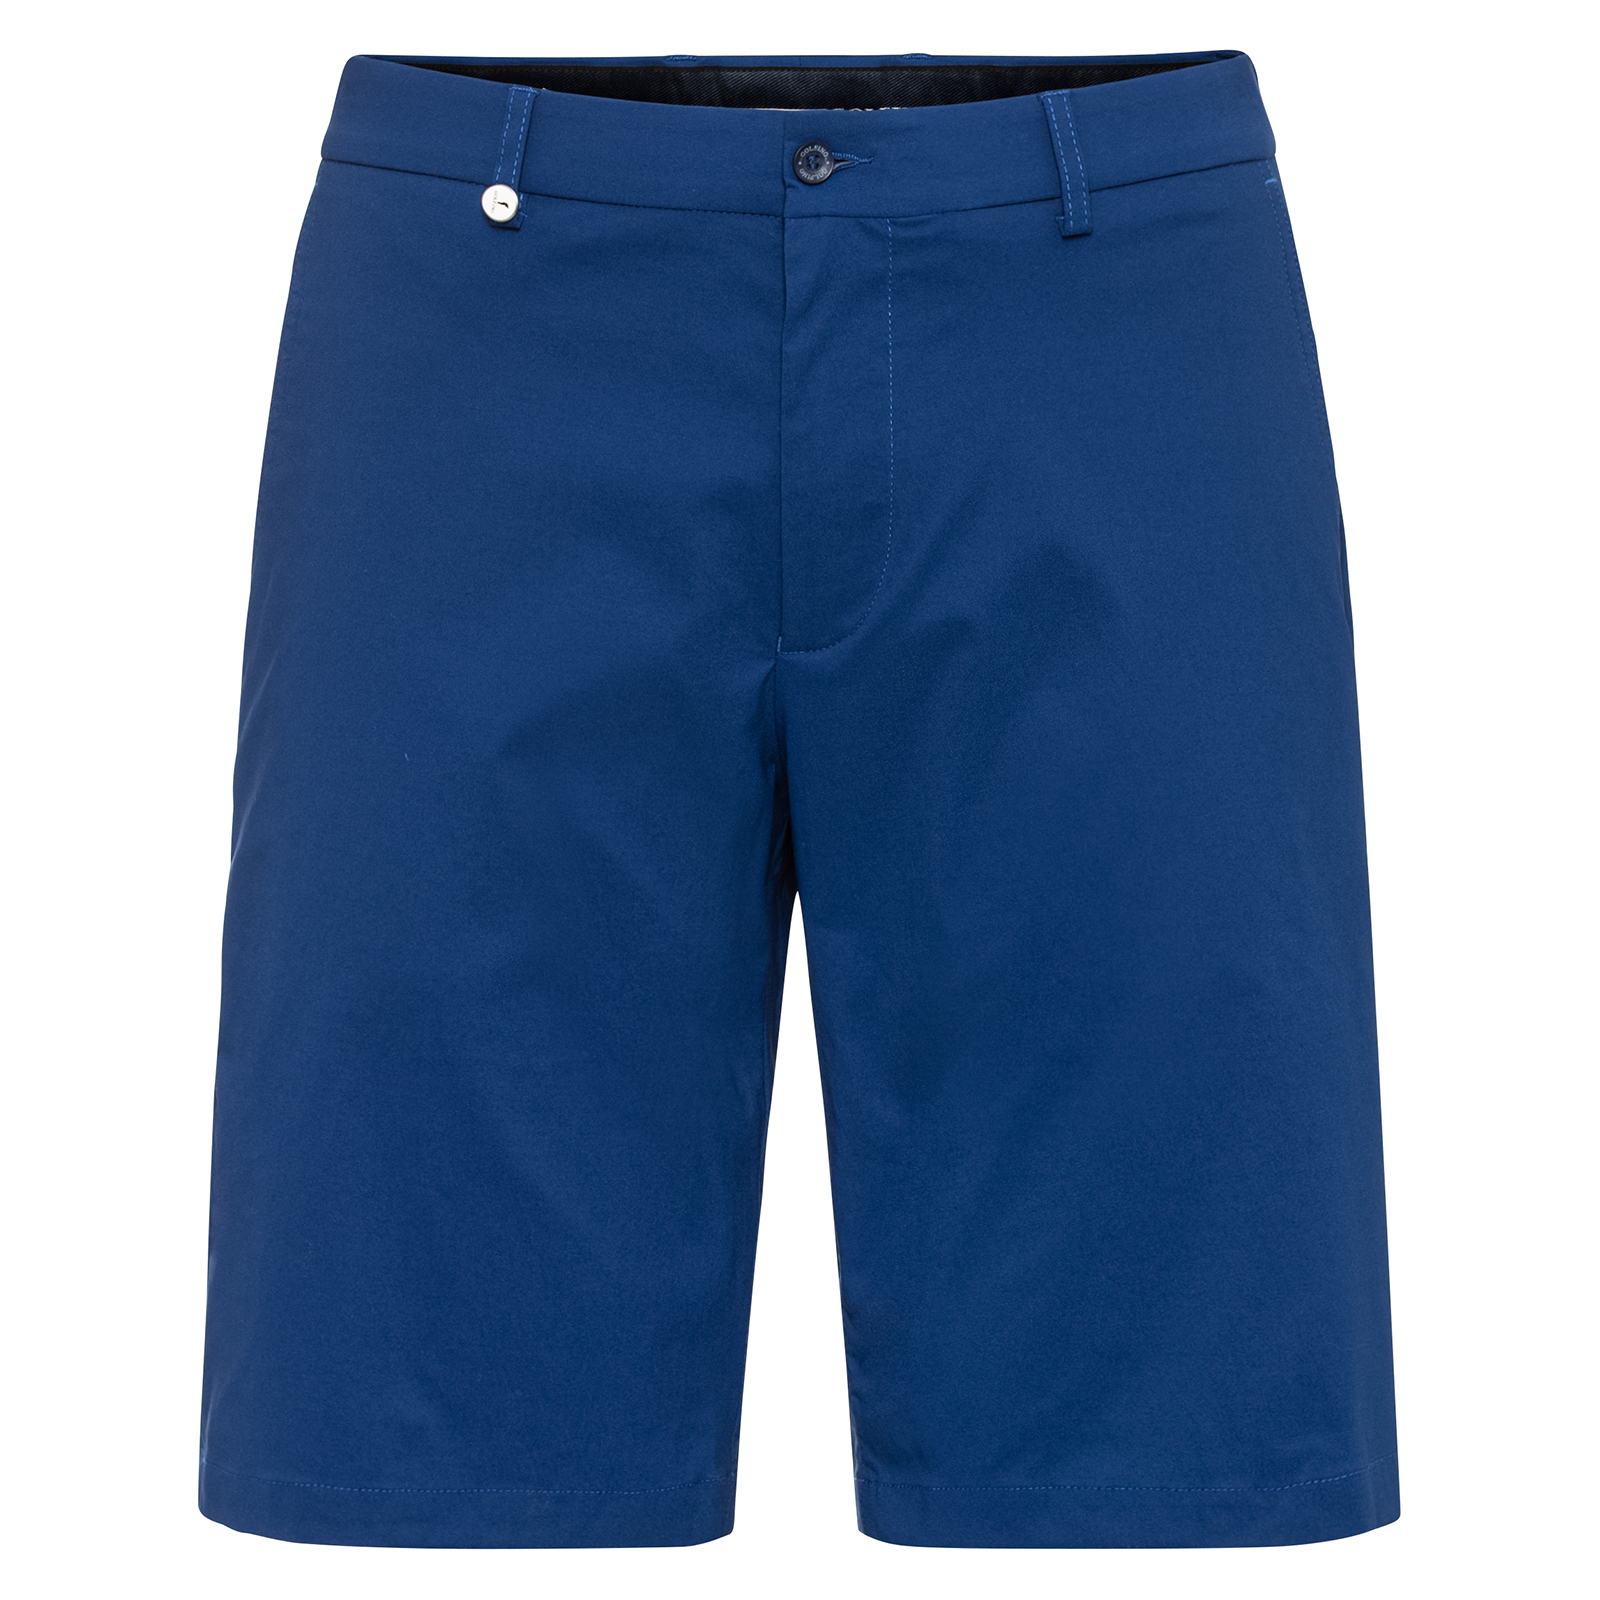 Men's stretch golf Bermuda shorts 